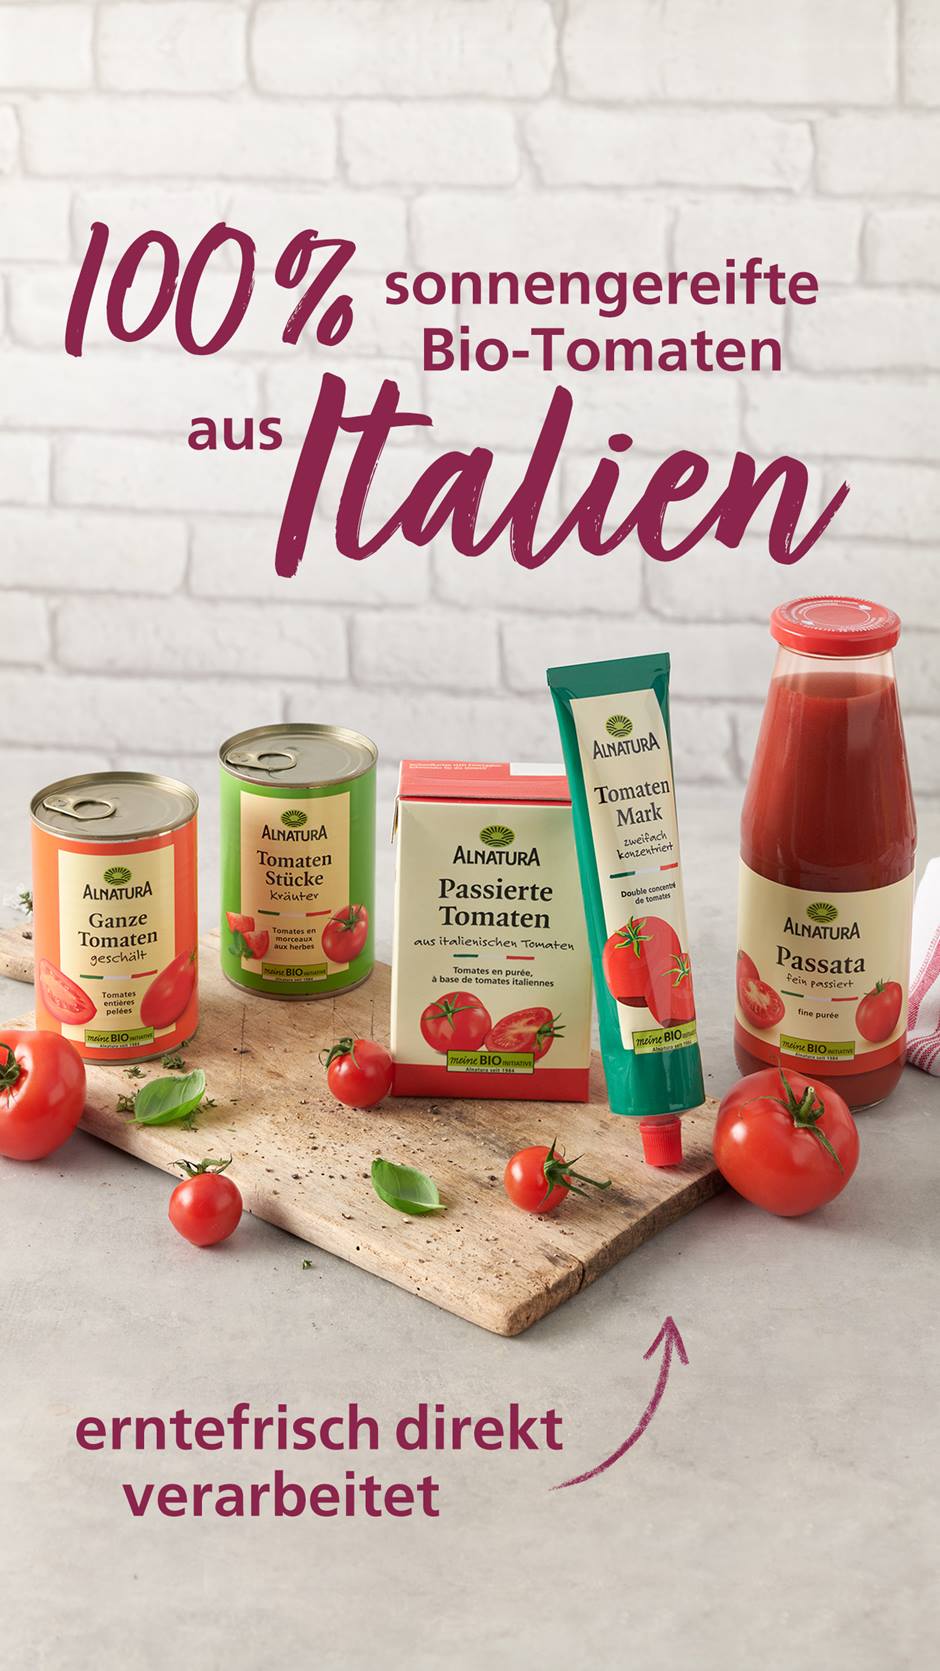 Verschiedene Alnatura Bio-Tomatenprodukte mit Text "100 % sonnengereifte Bio-Tomaten aus Italien - erntefrisch direkt verarbeitet"